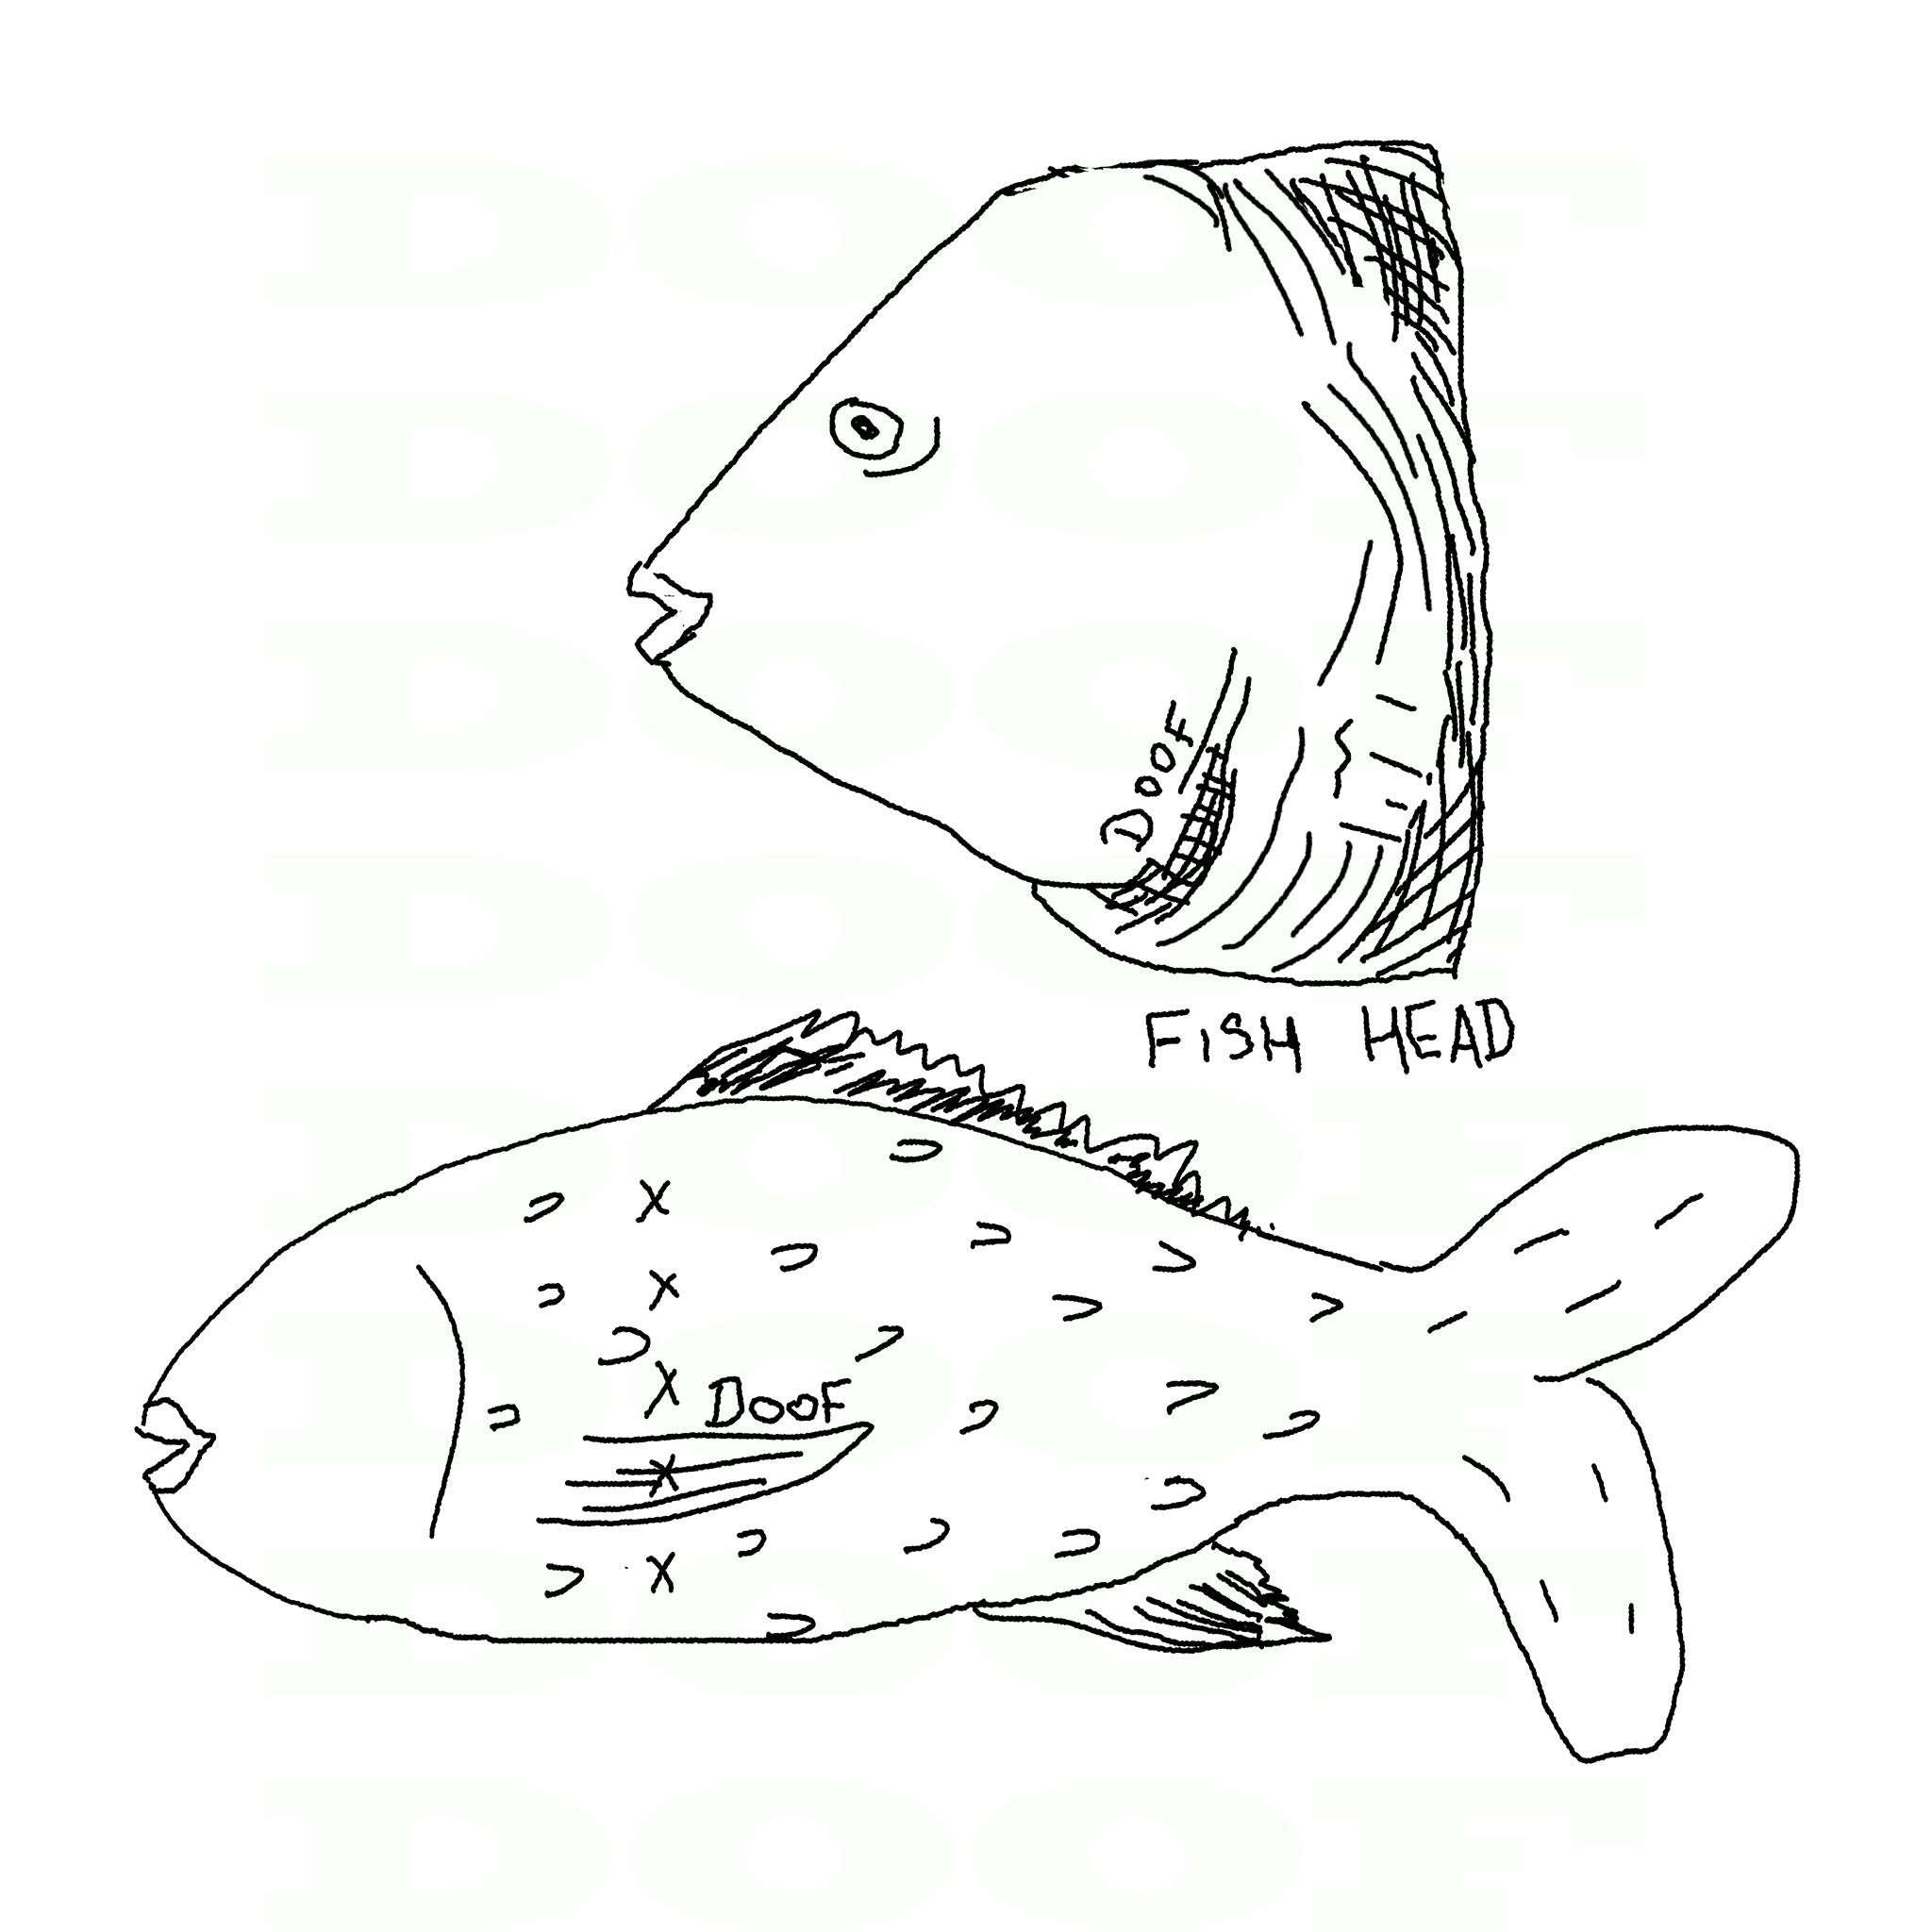 Fish✍... #pencildrawing #fish | Geometric tattoo, Pencil drawings, Drawings